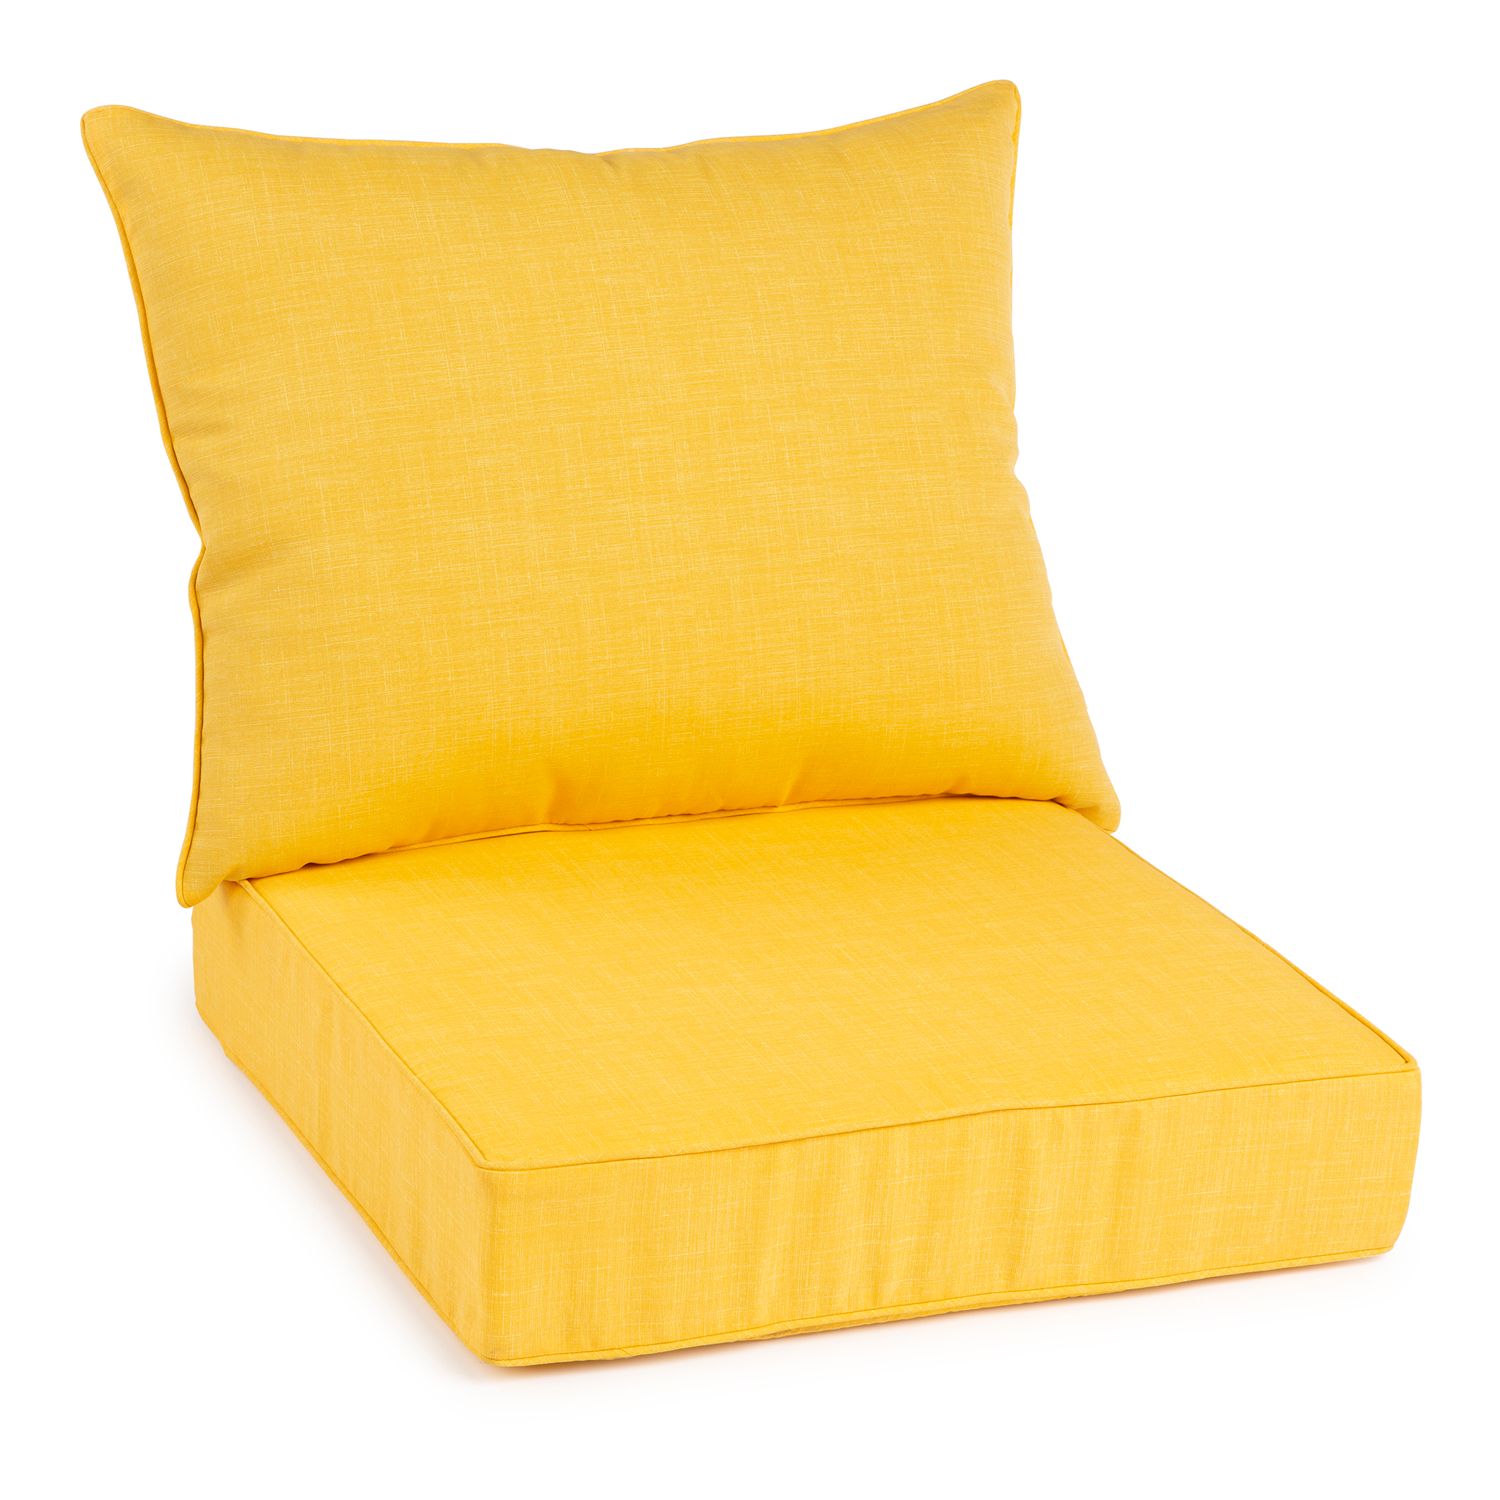 yellow seat pads